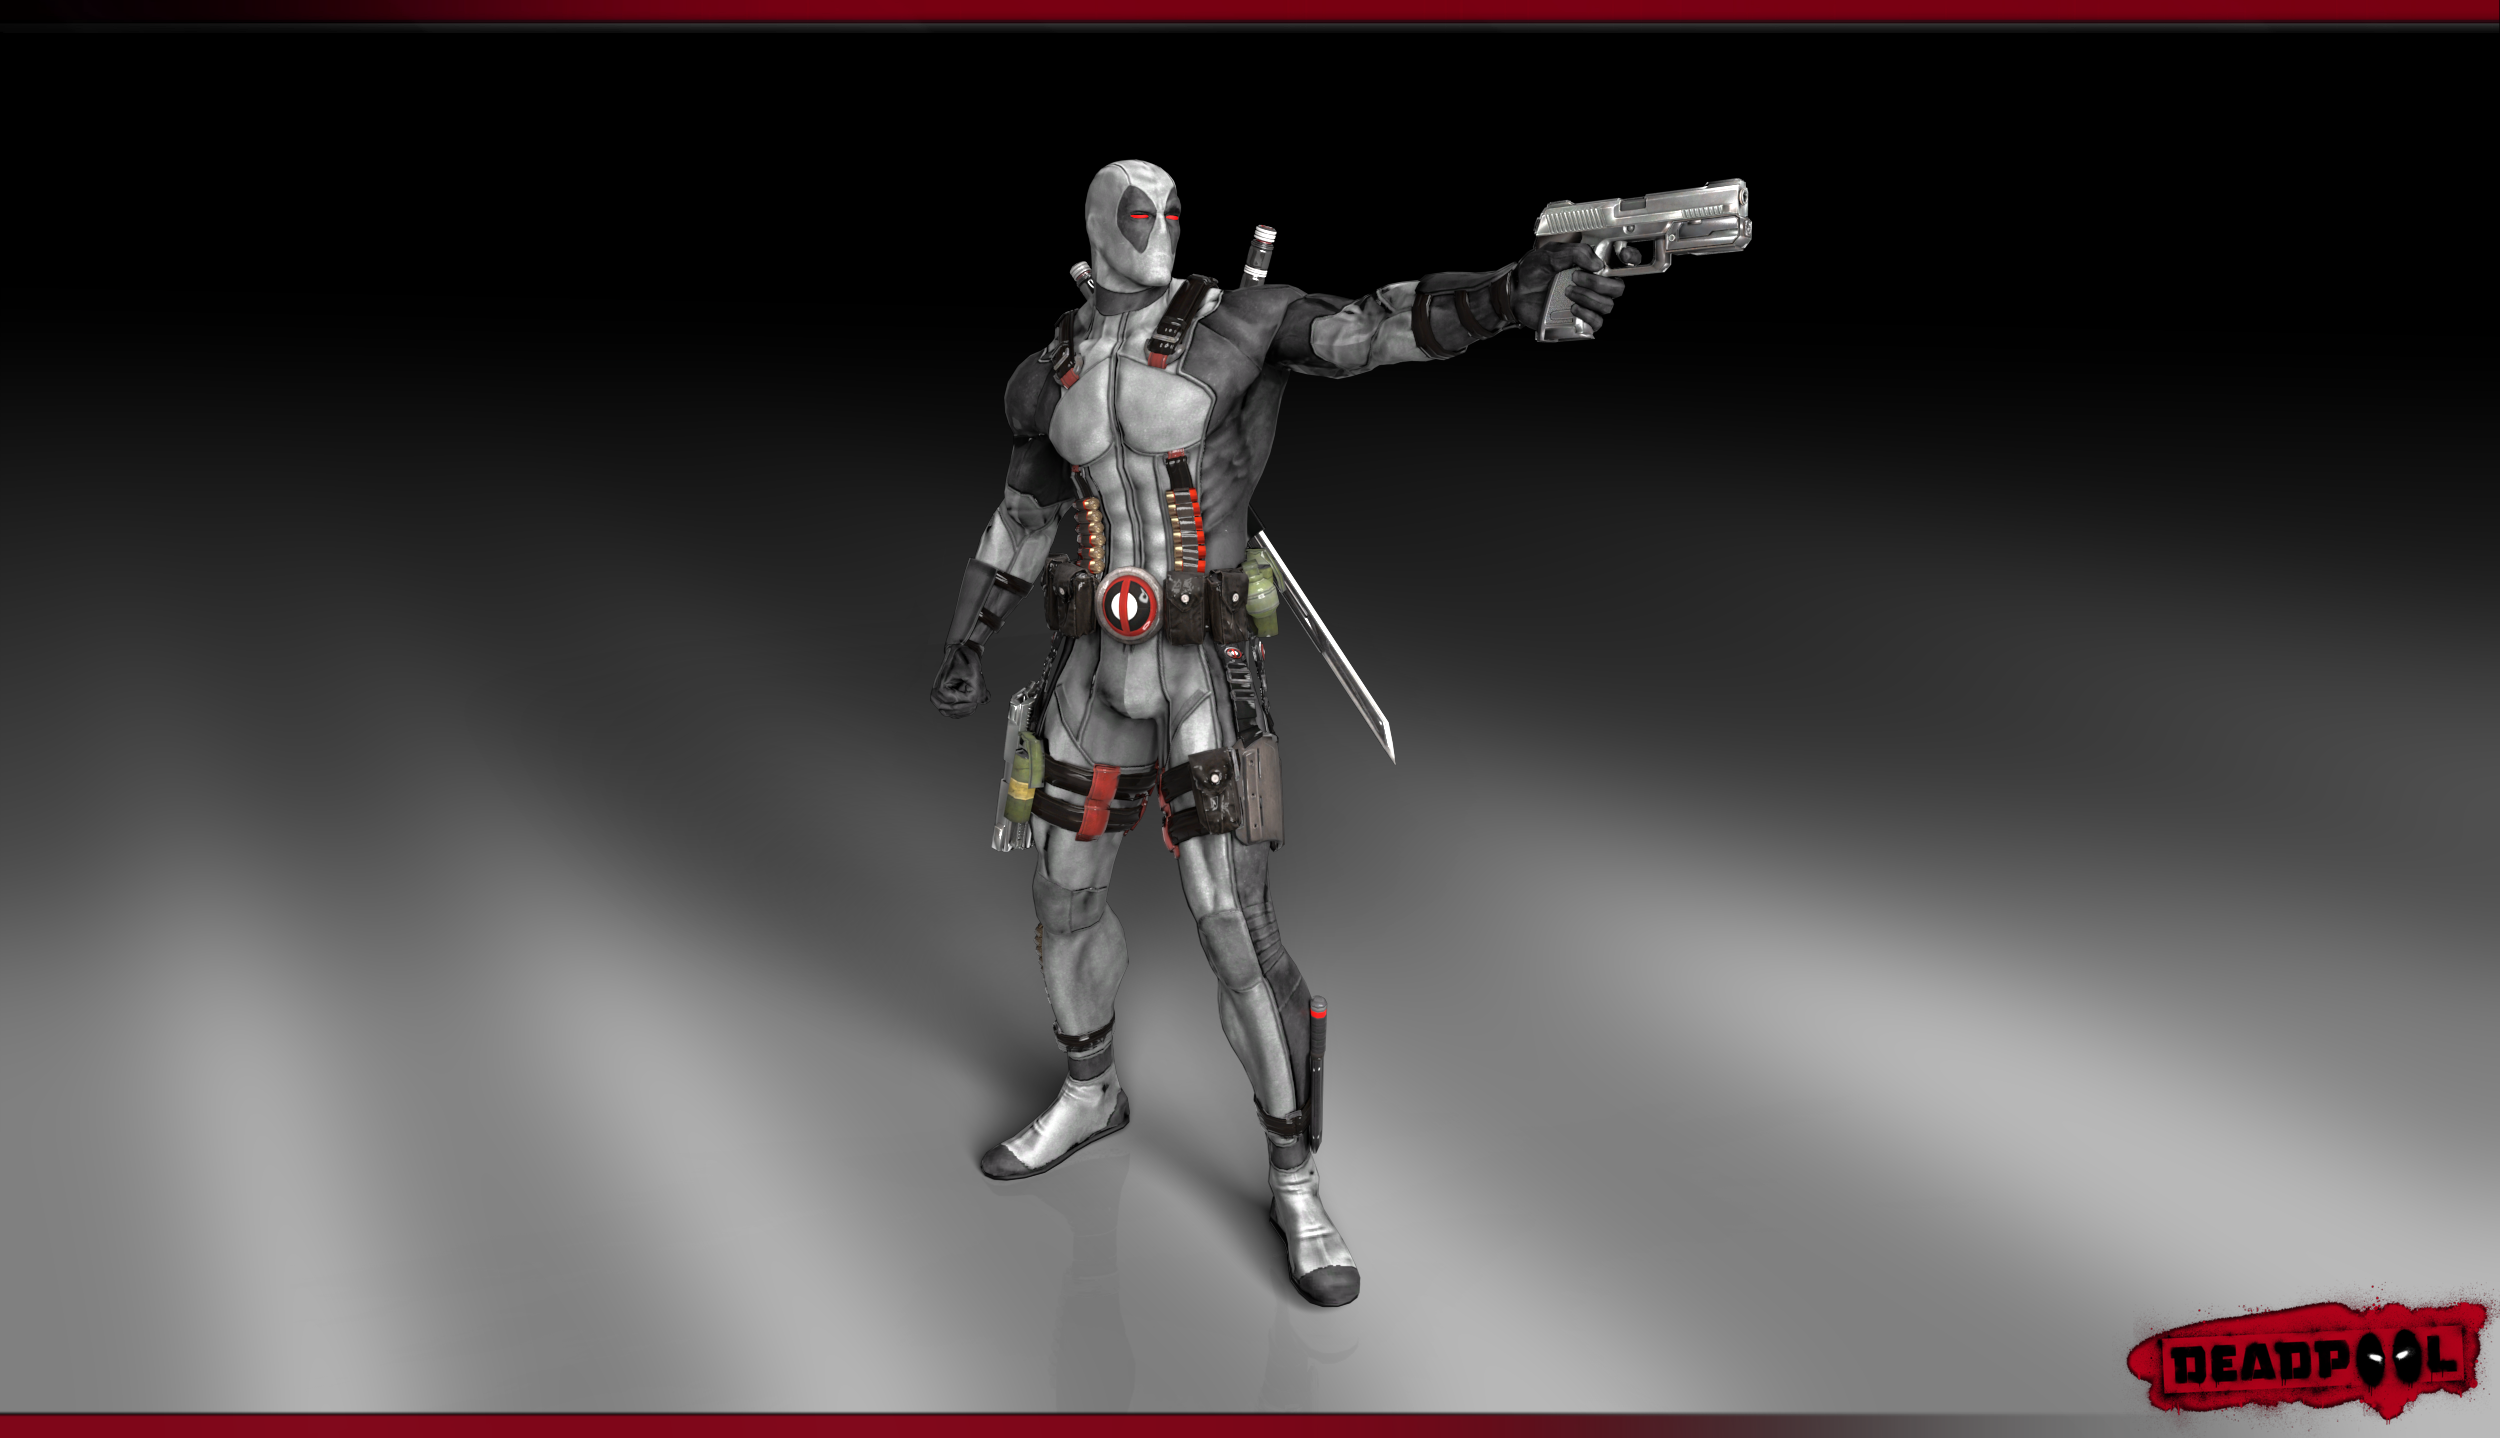 Deadpool render Wallpaper (X-Force Costume) by ArRoW-4-U on DeviantArt